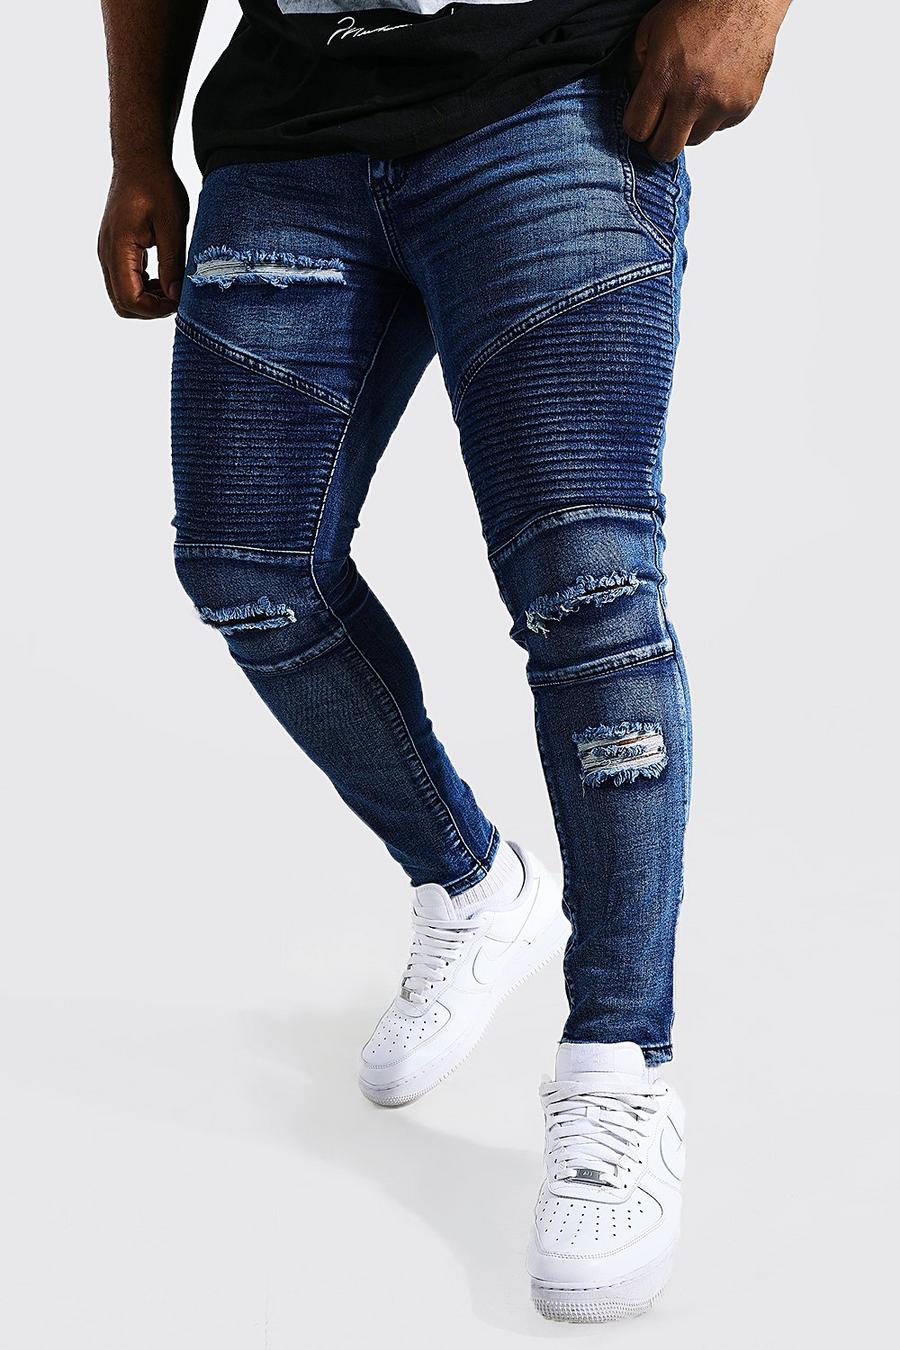 סקיני ג'ינס Ripped כחול בסגנון אופנוענים לגברים גדולים וגבוהים image number 1